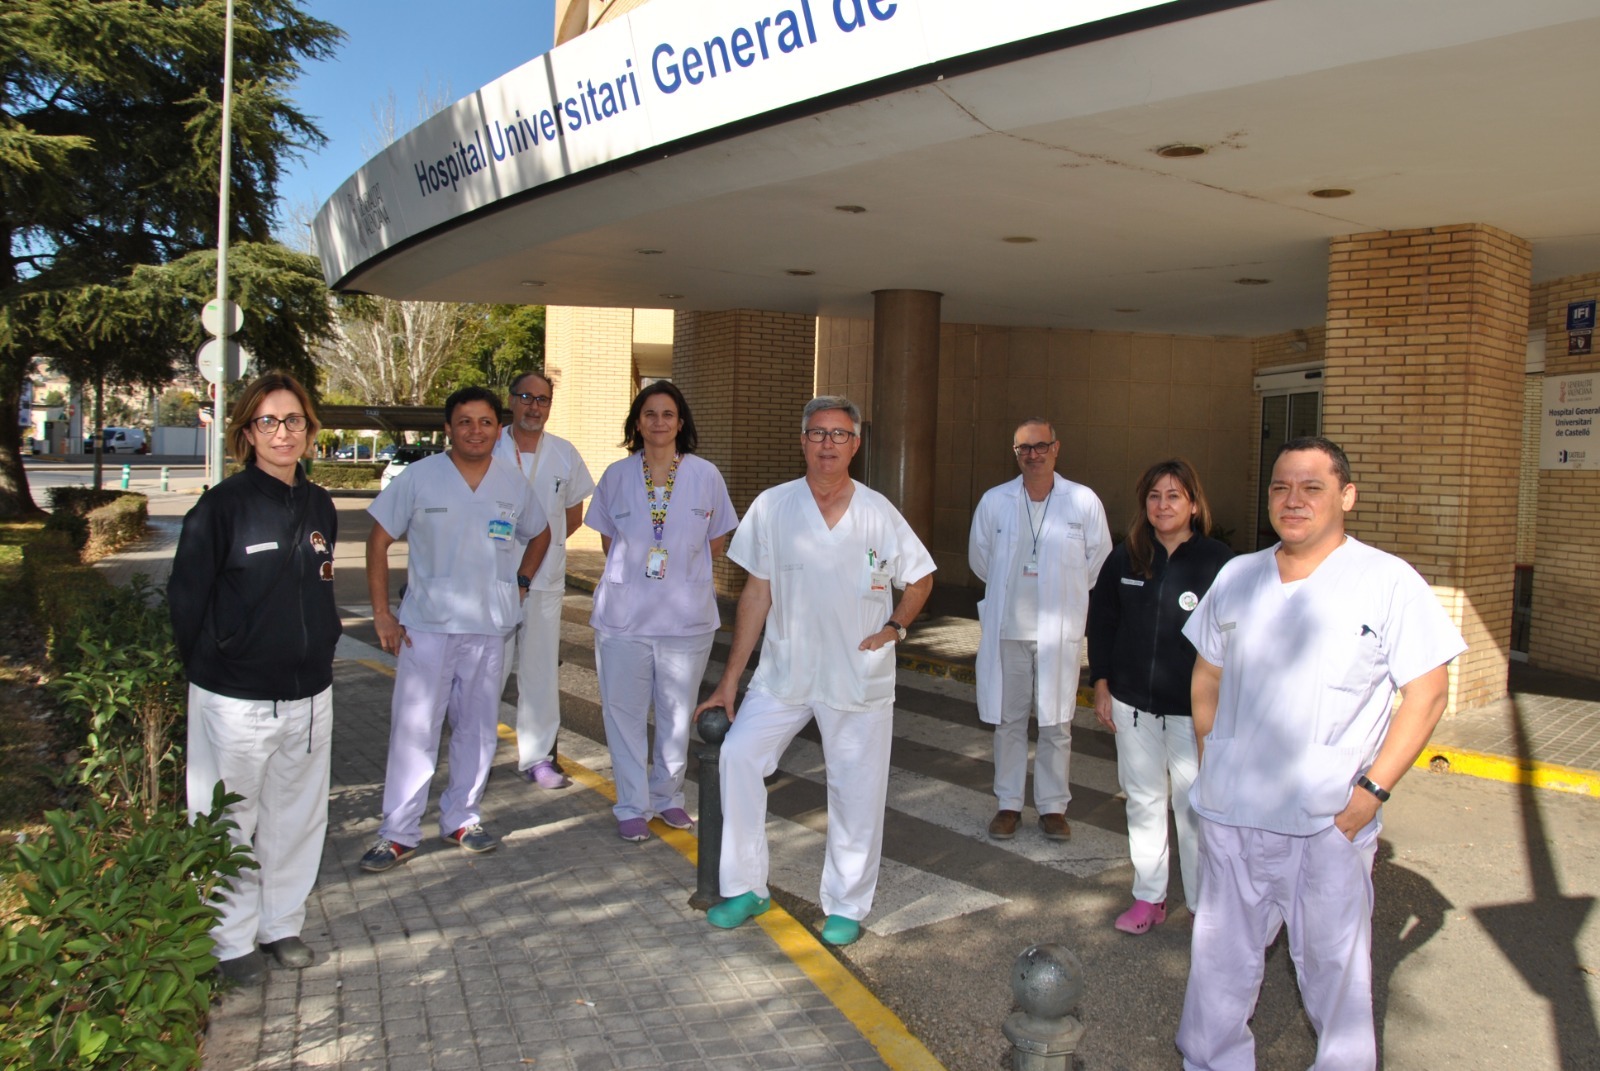 Los profesionales del HospitalGeneral están preparados para realizar el trasplante renal.